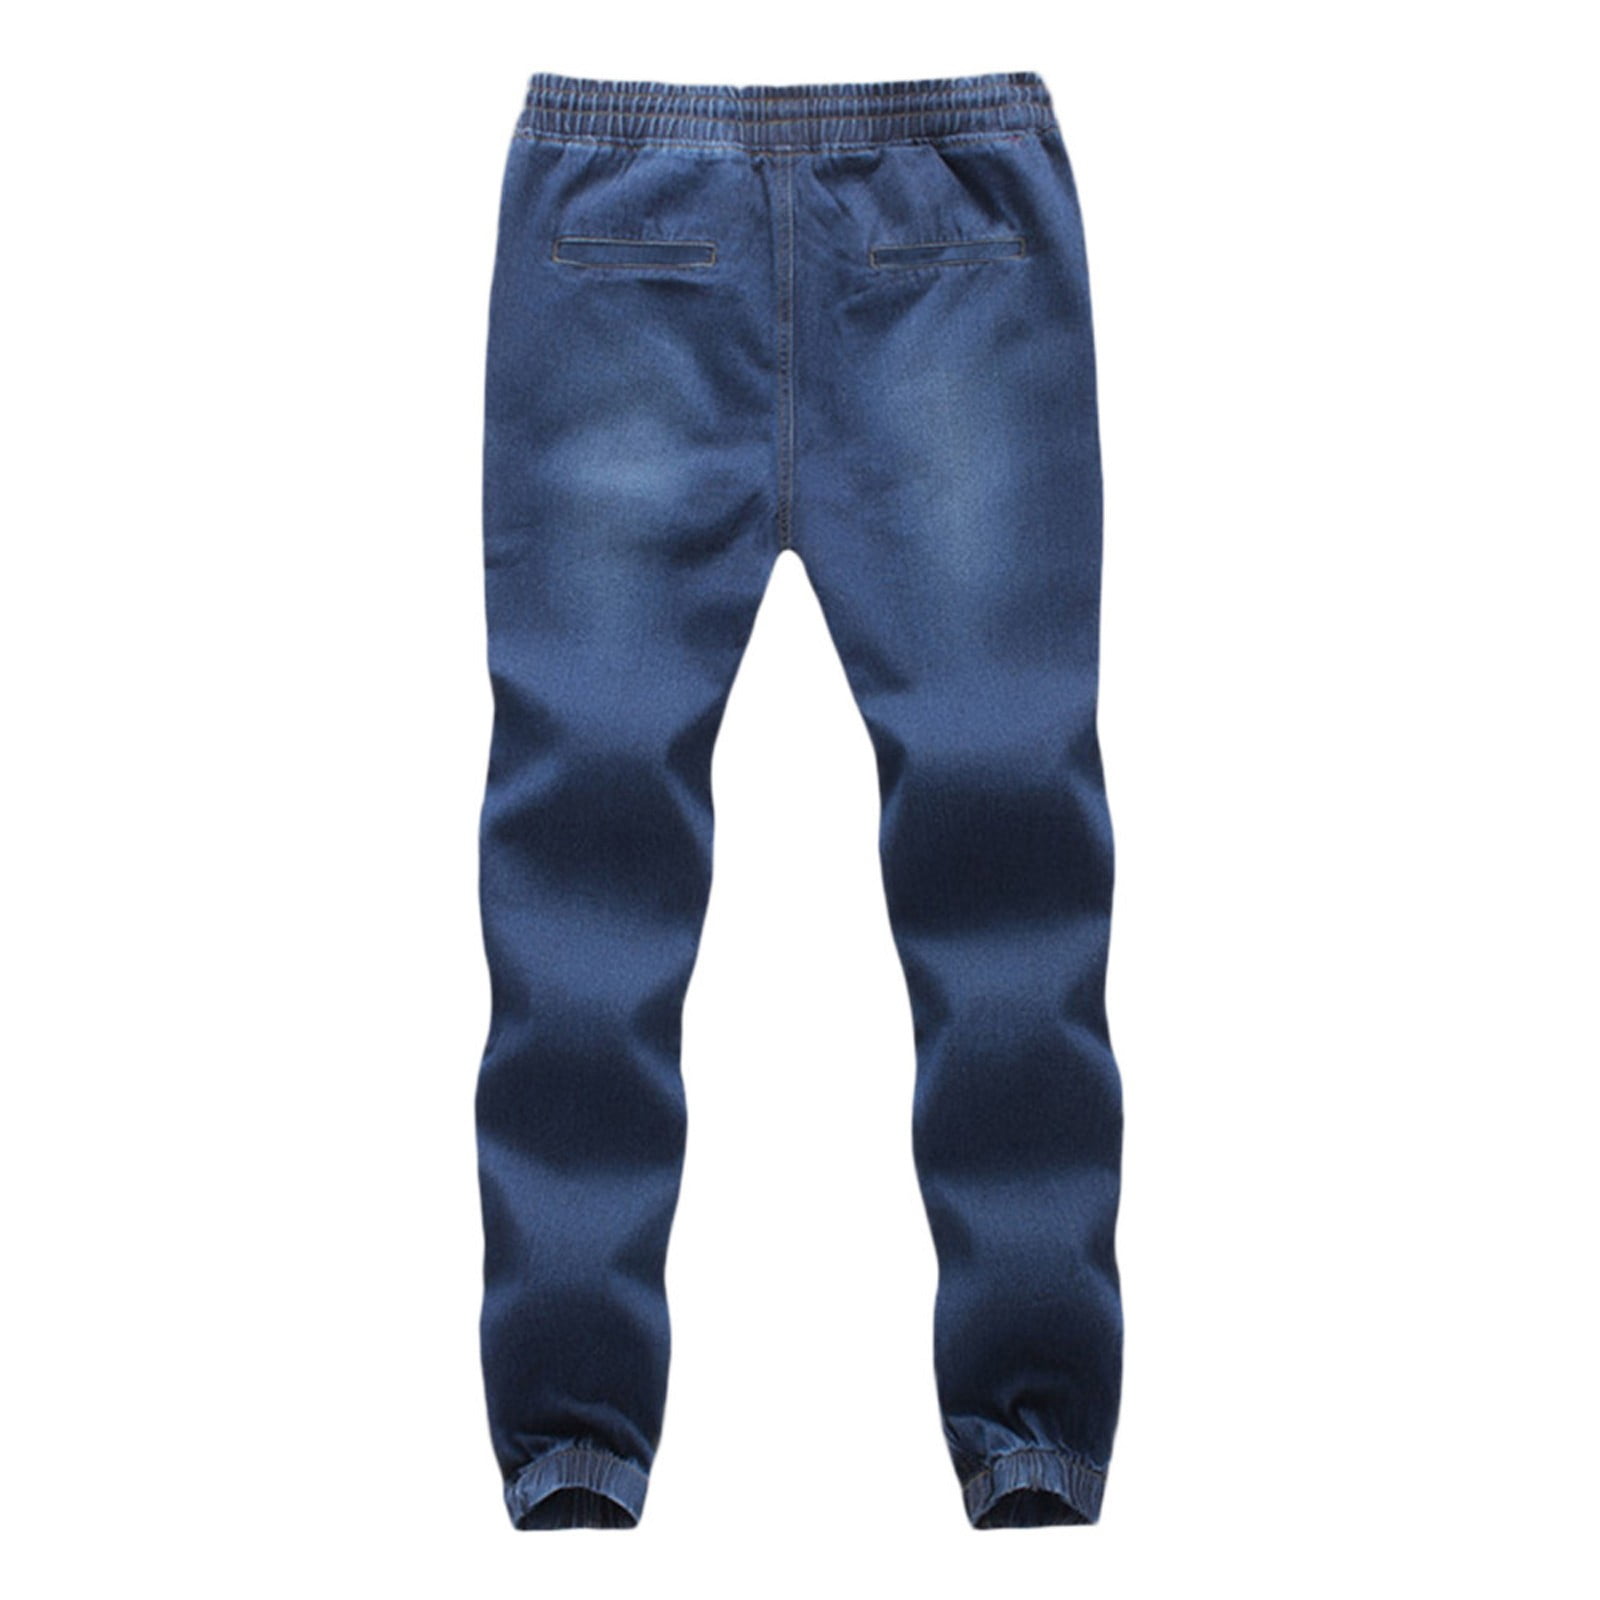 IROINNID Men's Jeans Pants Solid Color Autumn Denim Cotton Elastic Draw ...